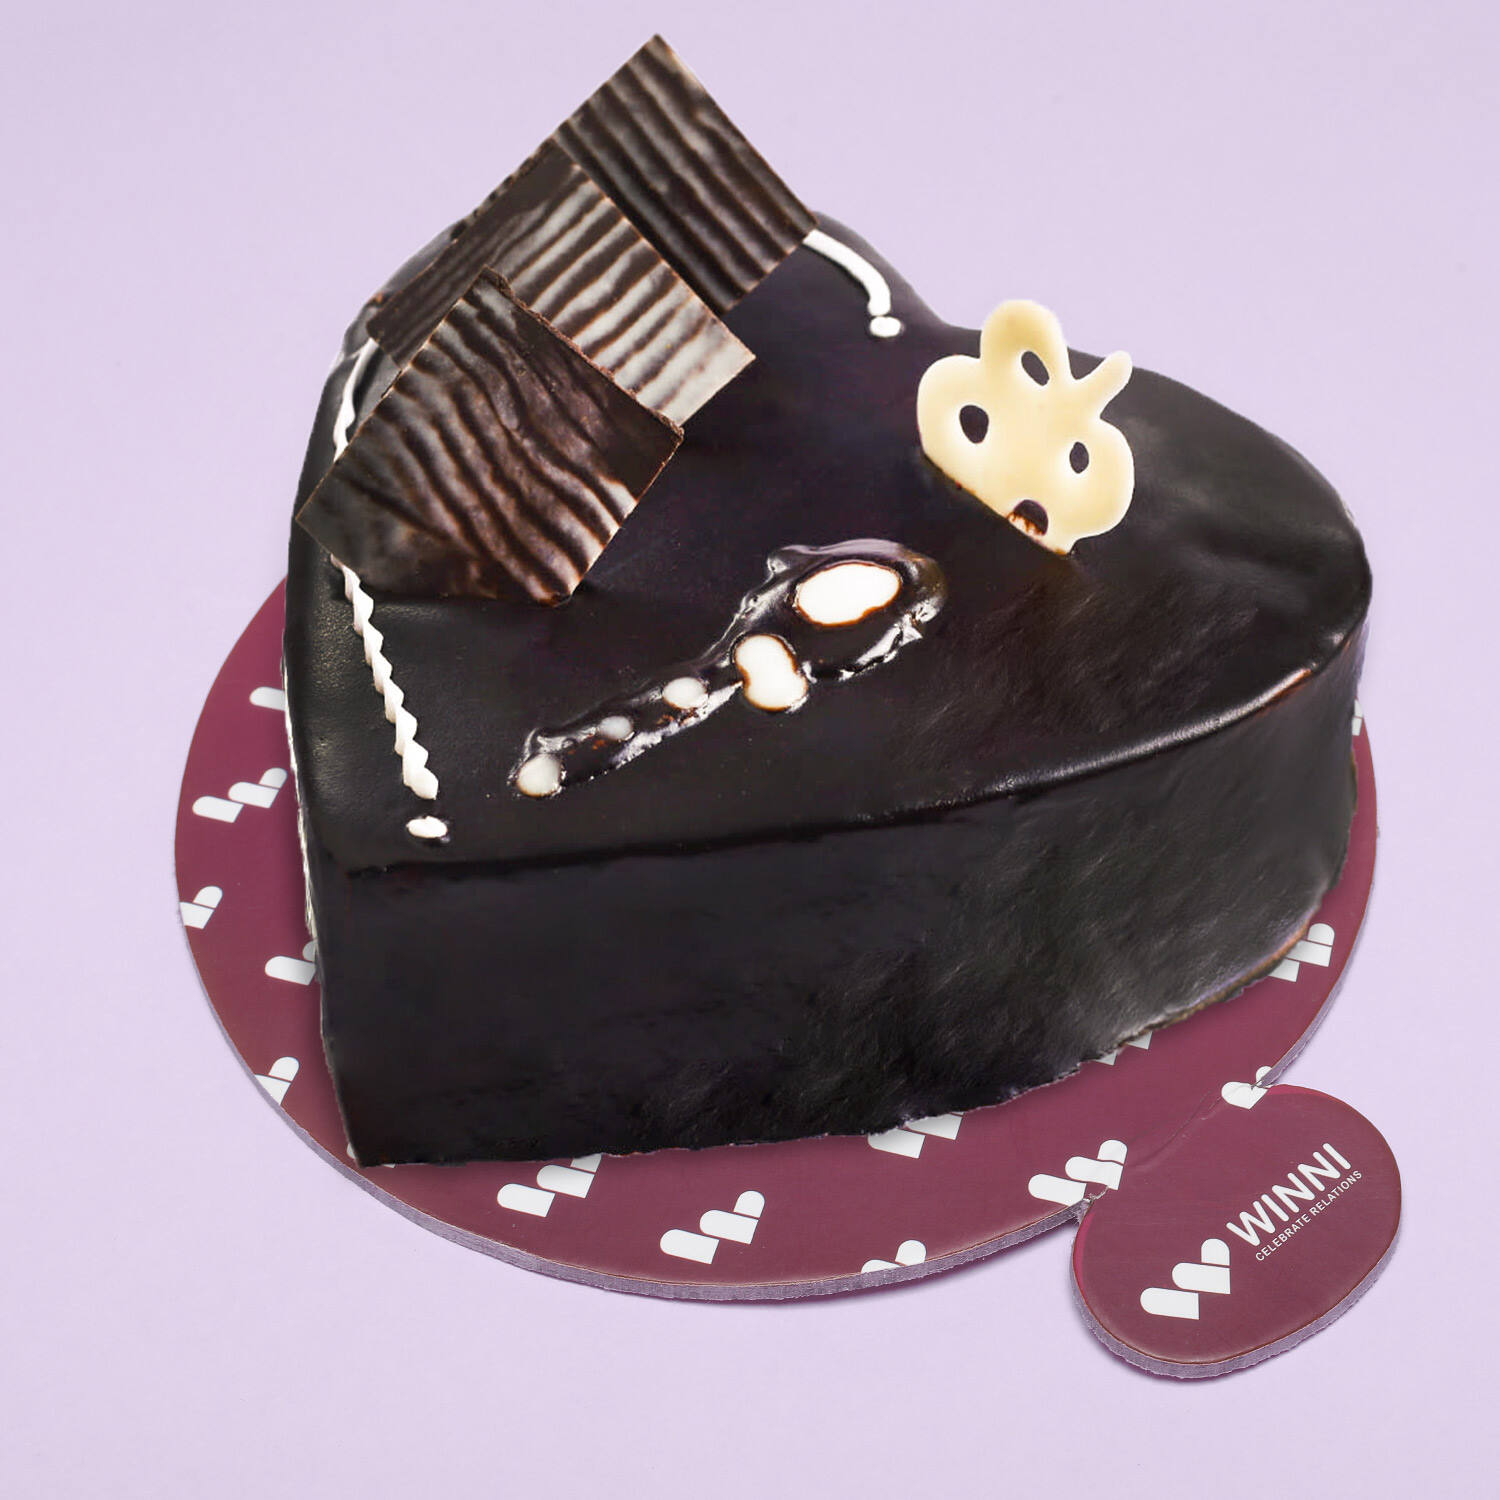 Share 66+ 250 gram chocolate cake latest